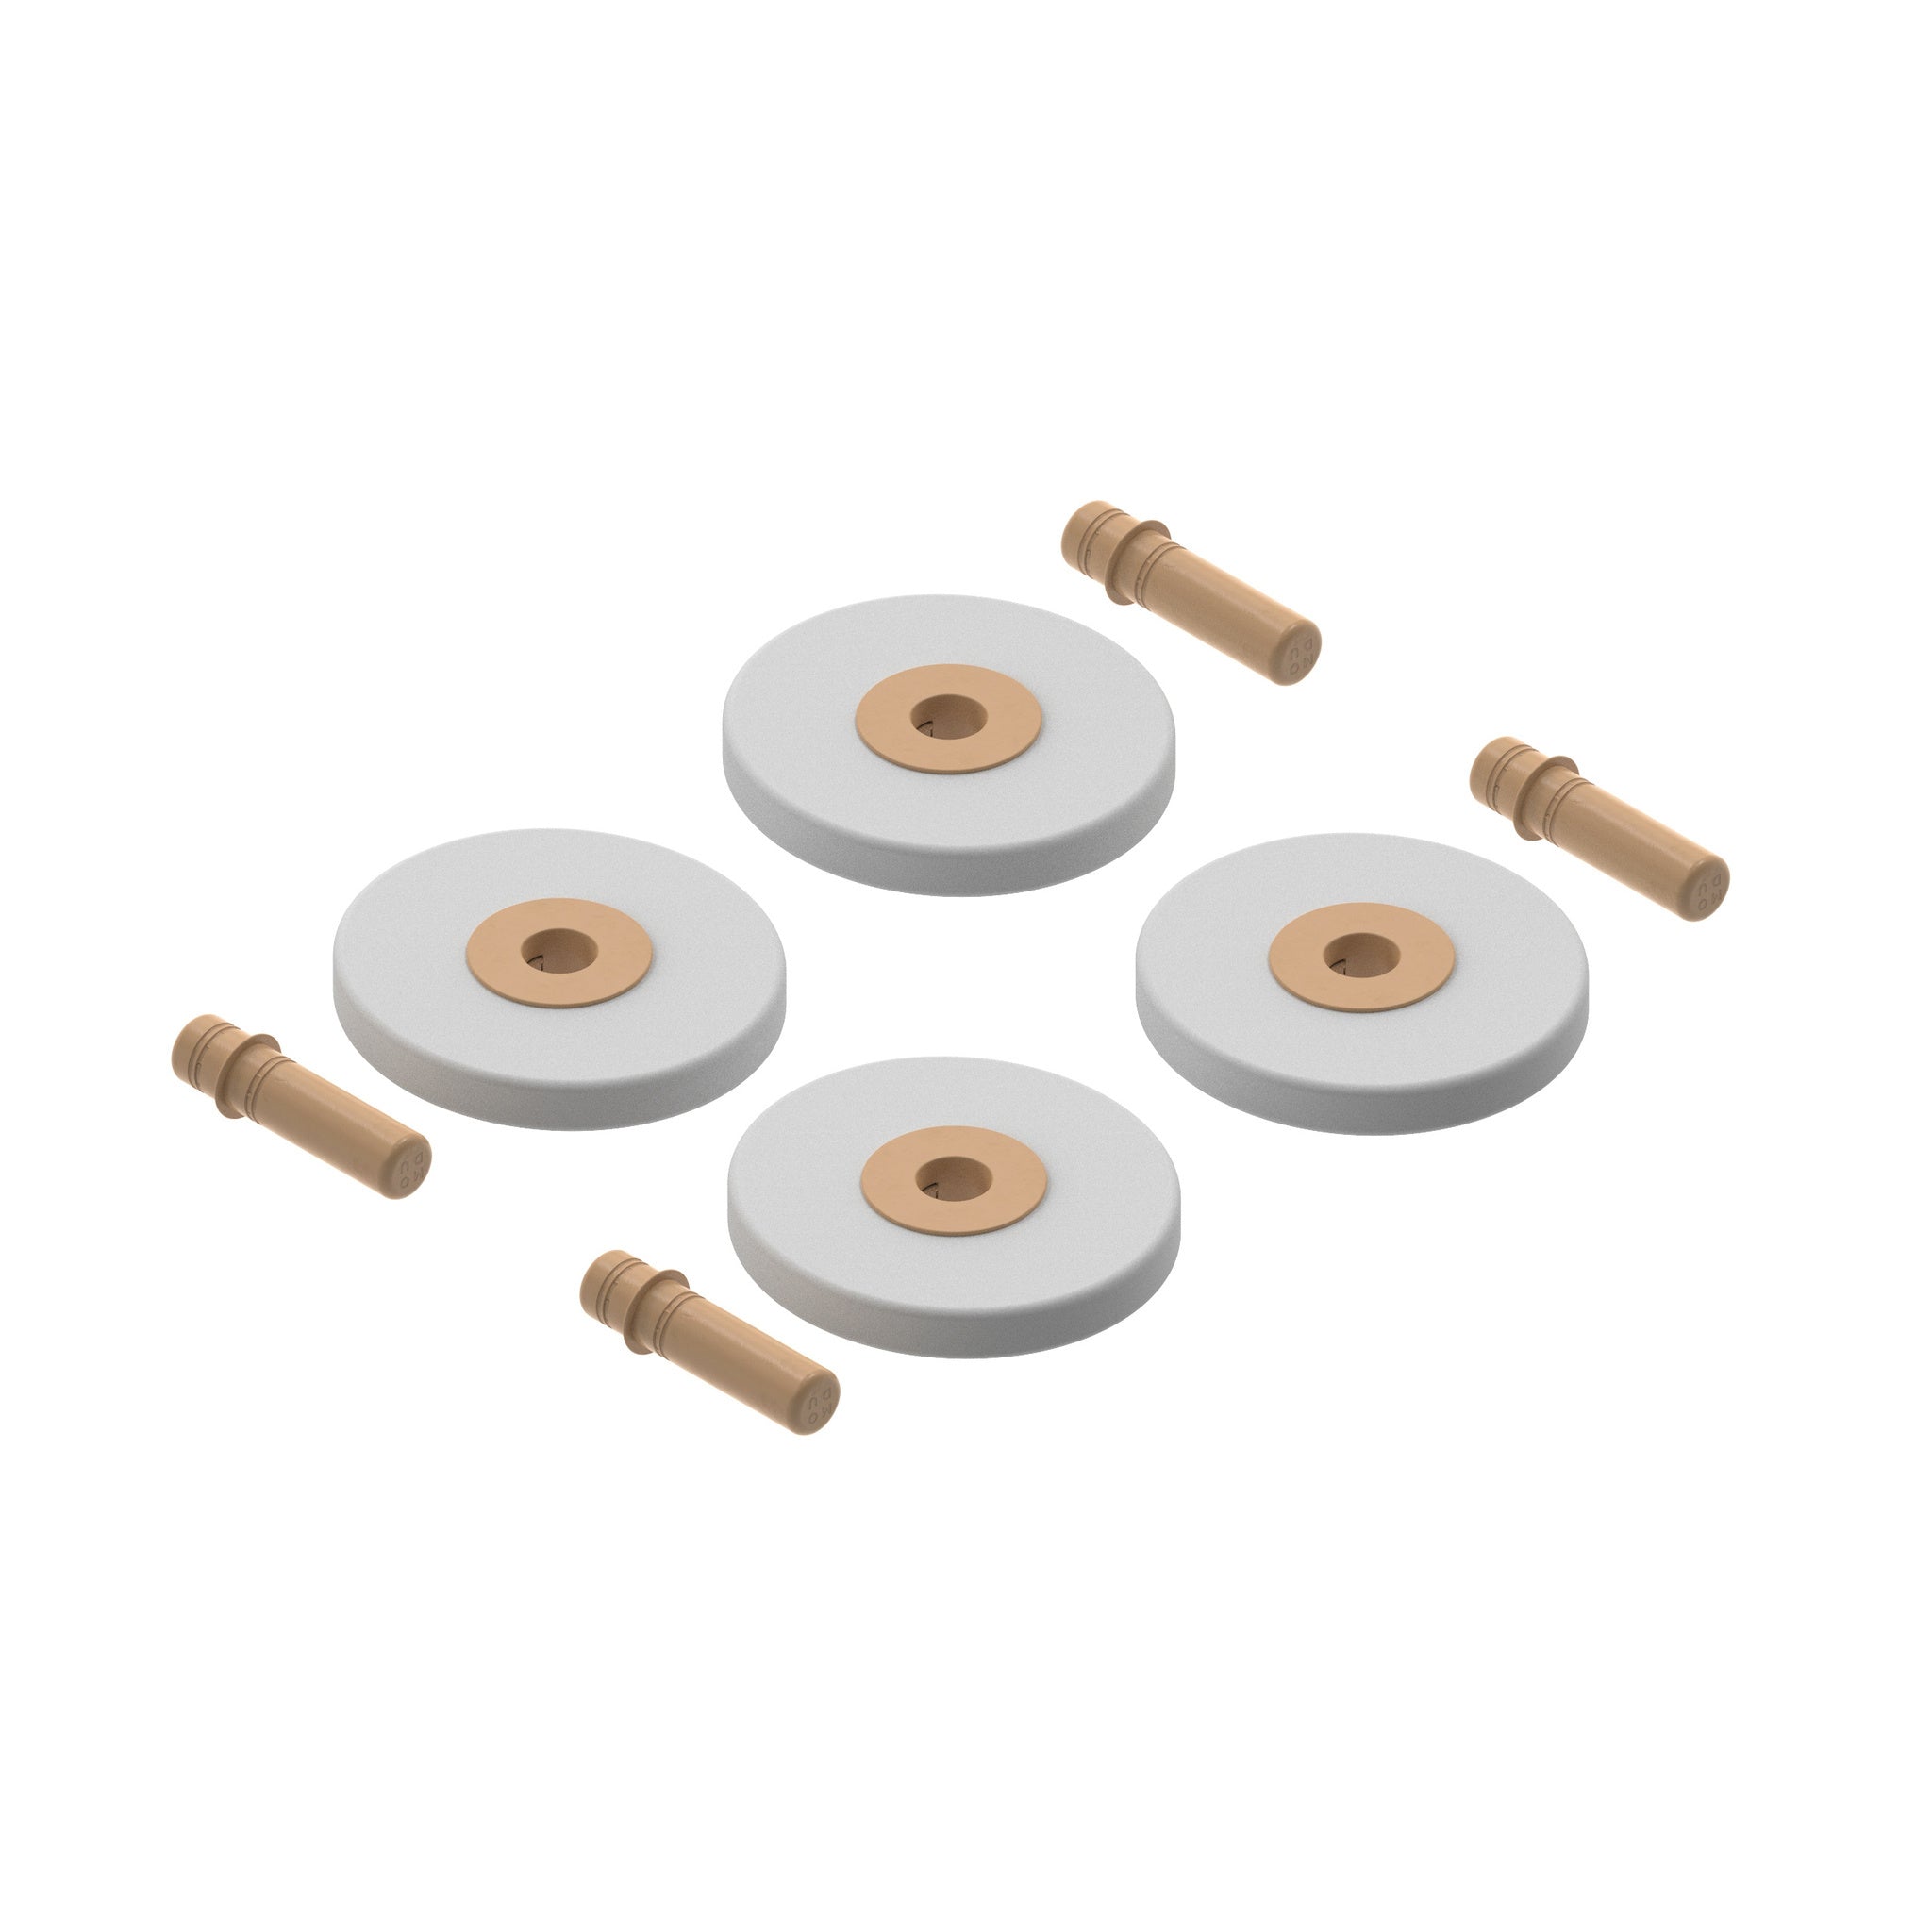 Module - a set of 4 foam wheels, caramel